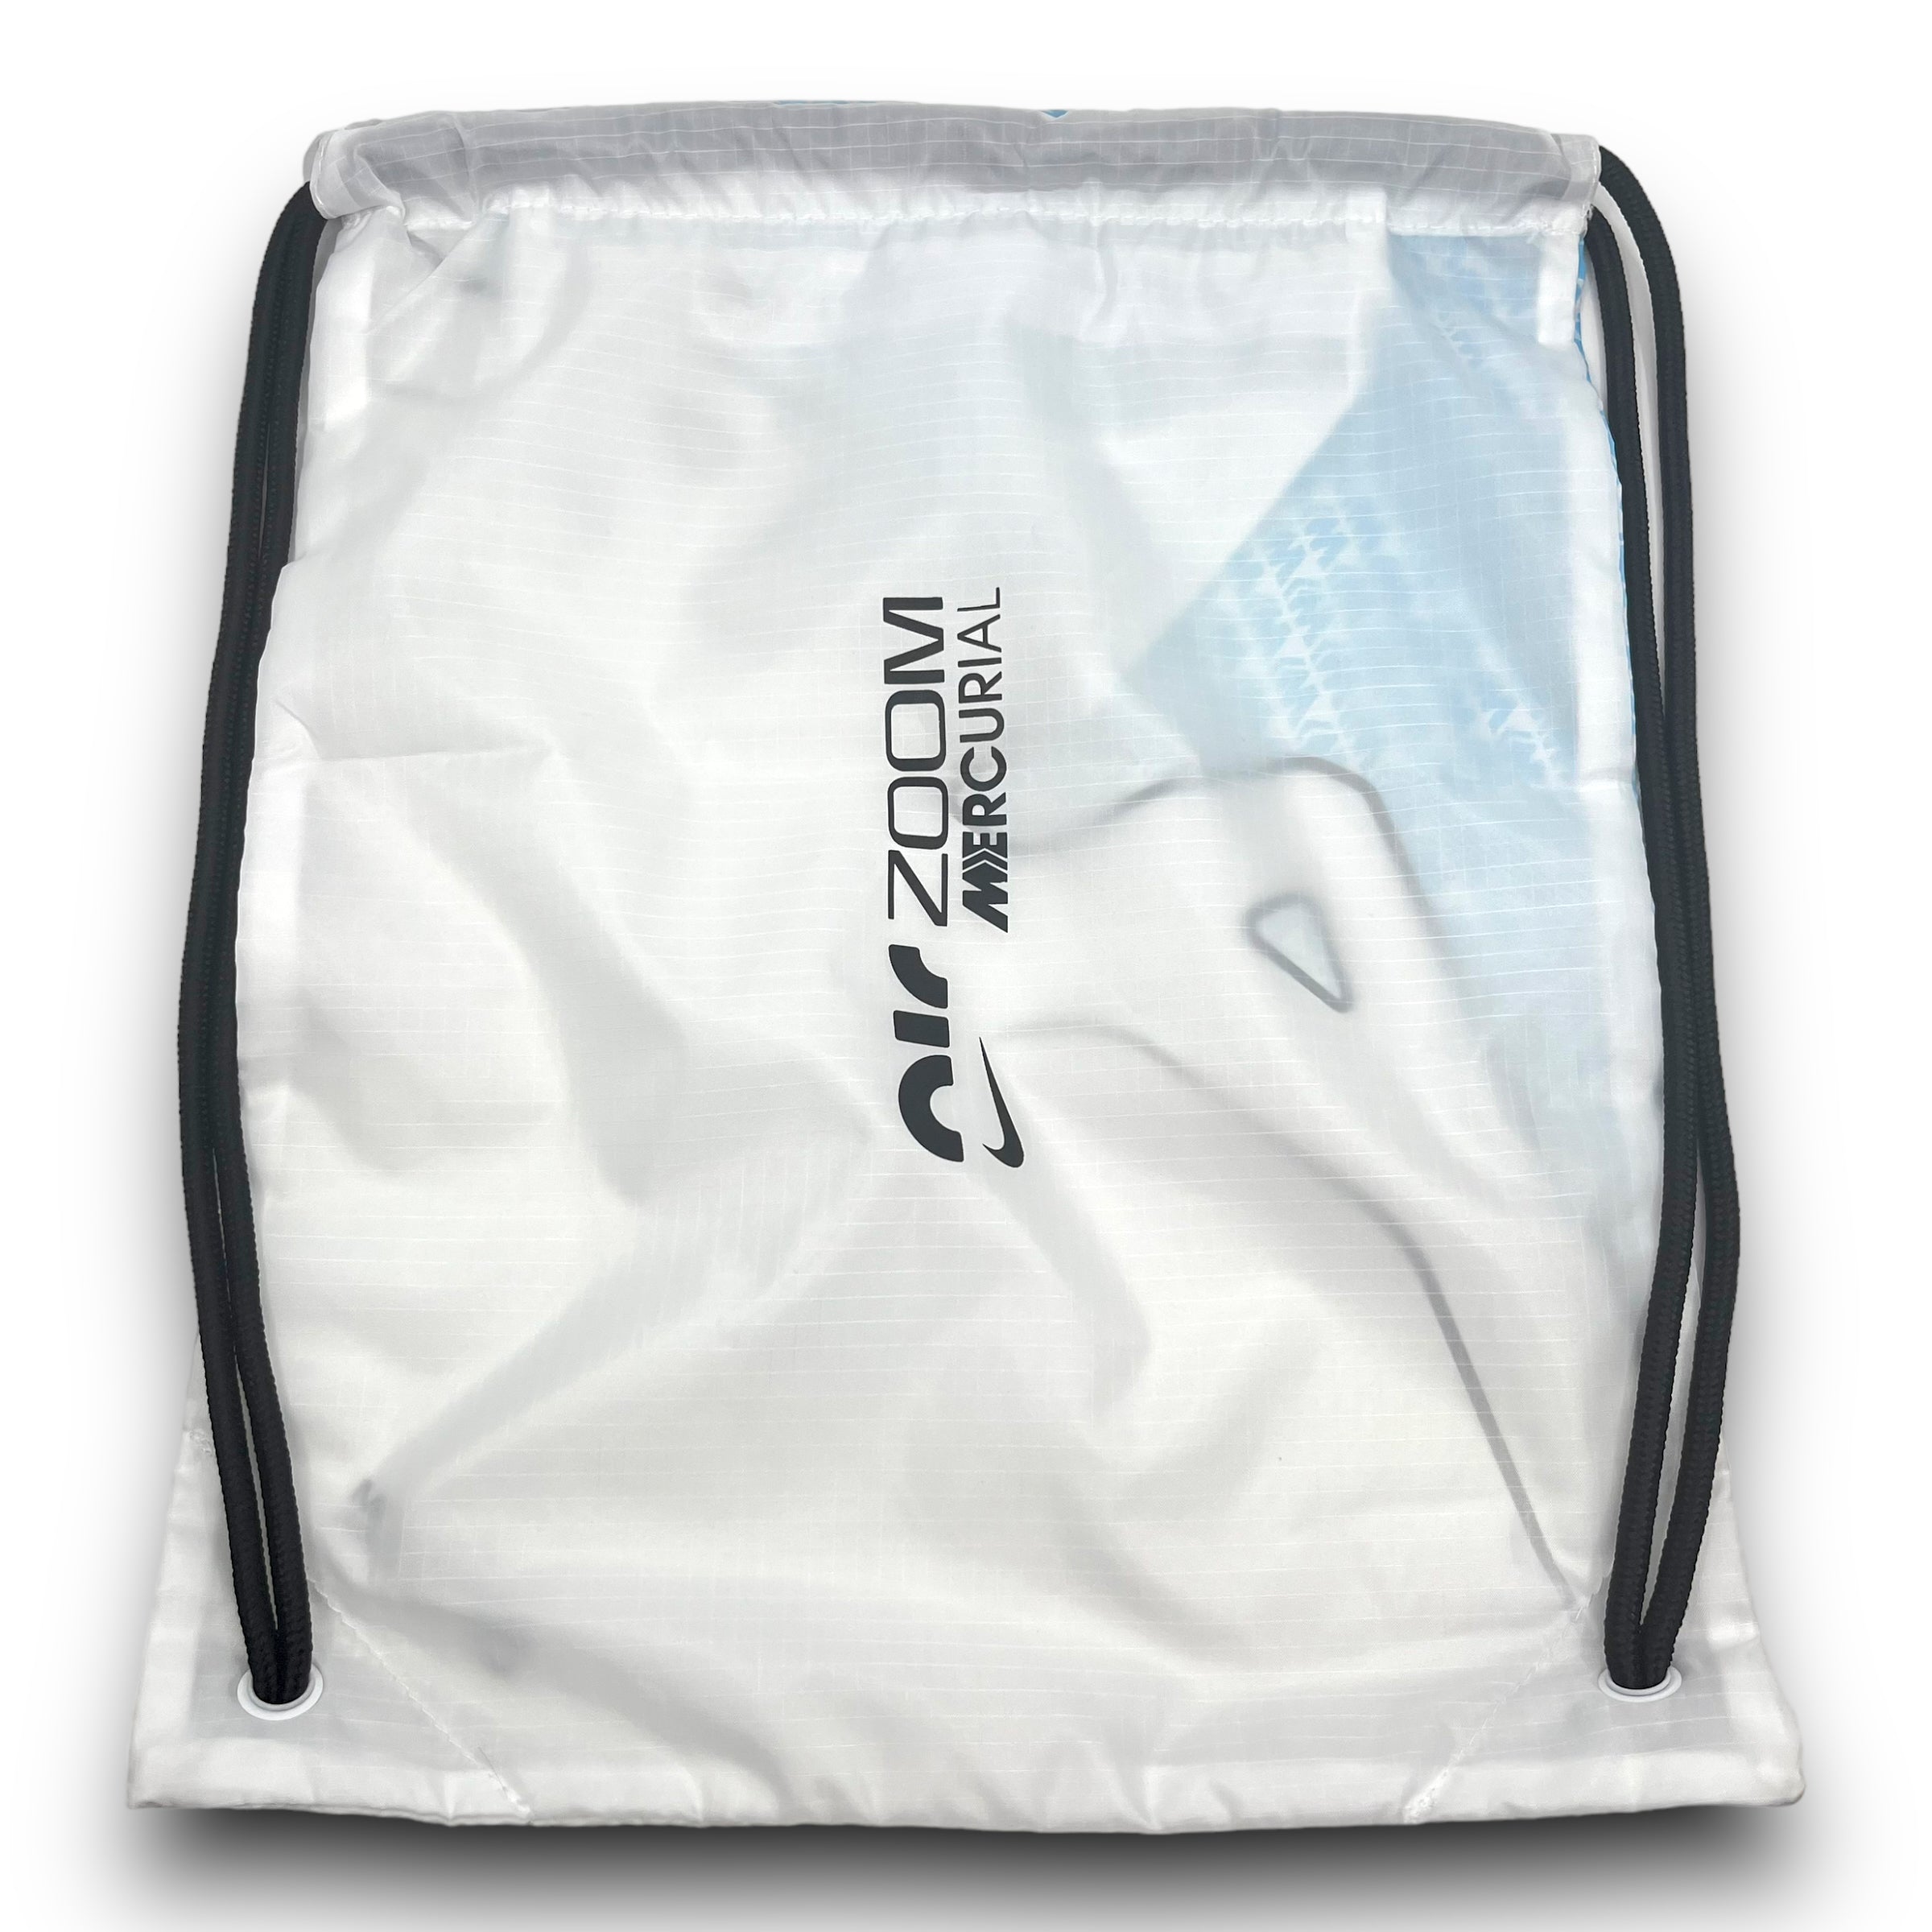 Nike Air Zoom Mercurial Carrying Bag